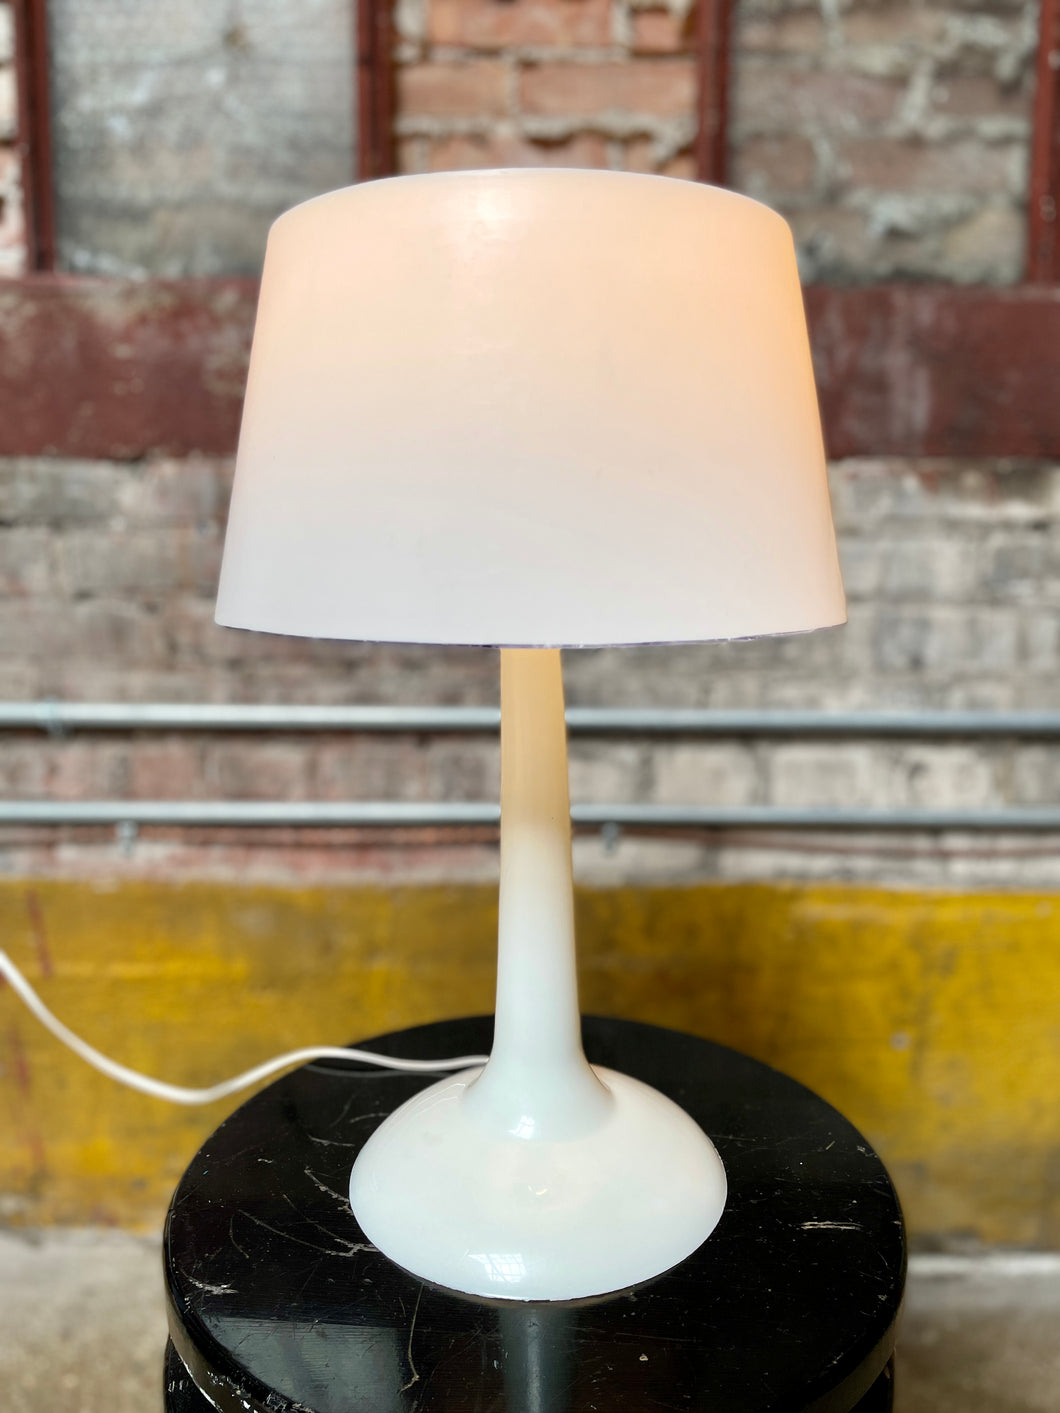 ‘60s Plastic Lamp